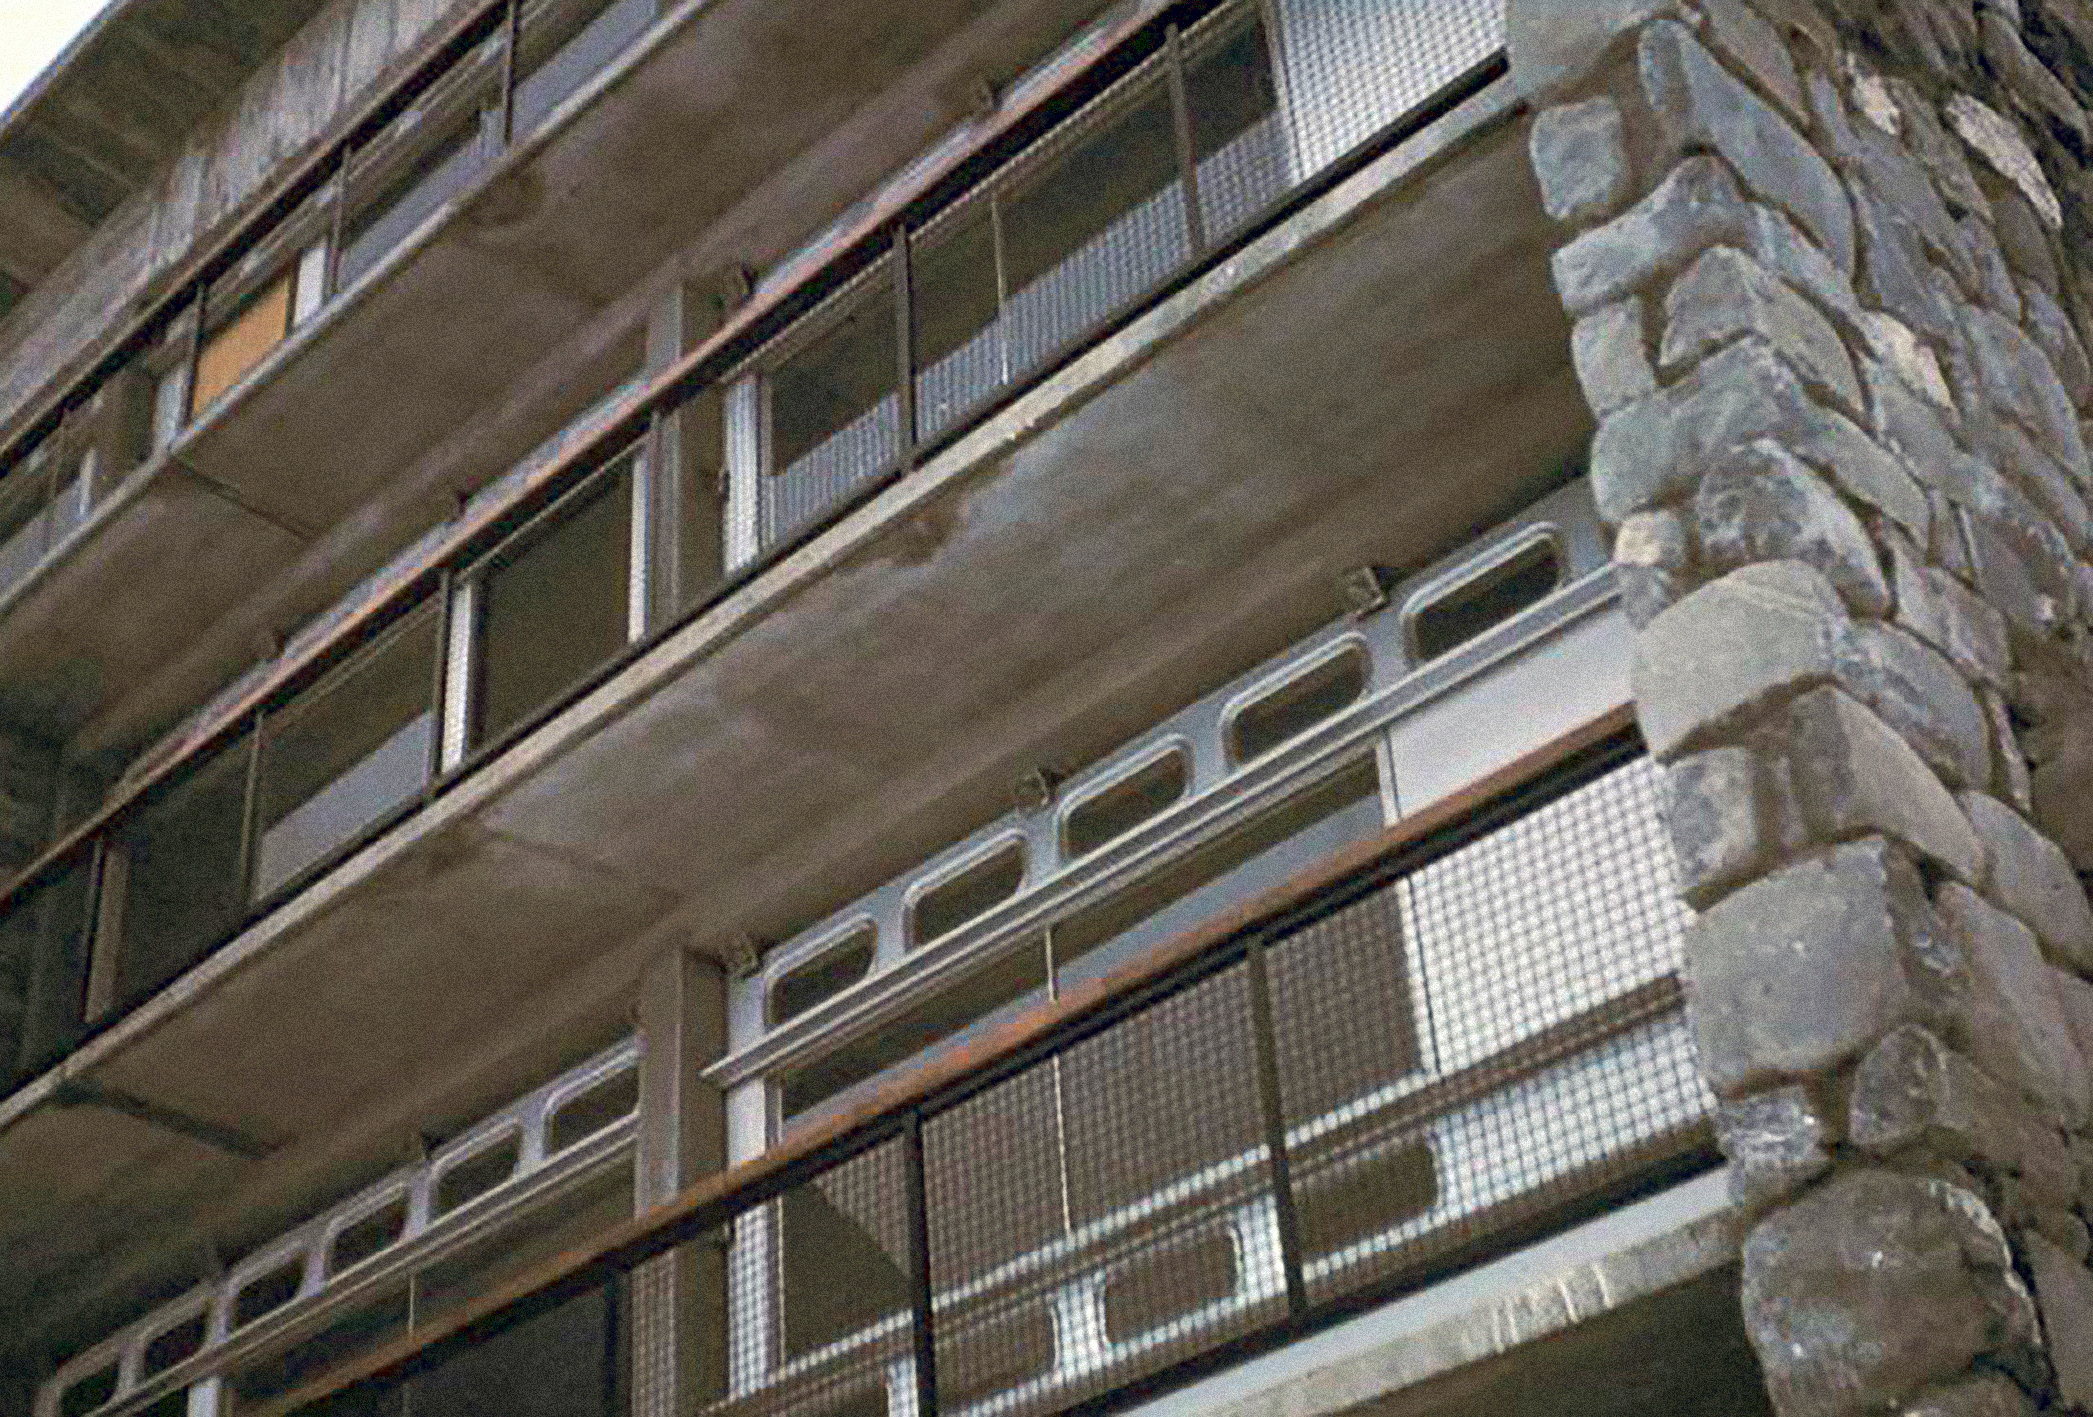 Immeuble, Saint-Jean-de-Maurienne, 1954 (M. Blanc, arch.). Panneaux de façade, type « voile-grille », conçus par Jean Prouvé.